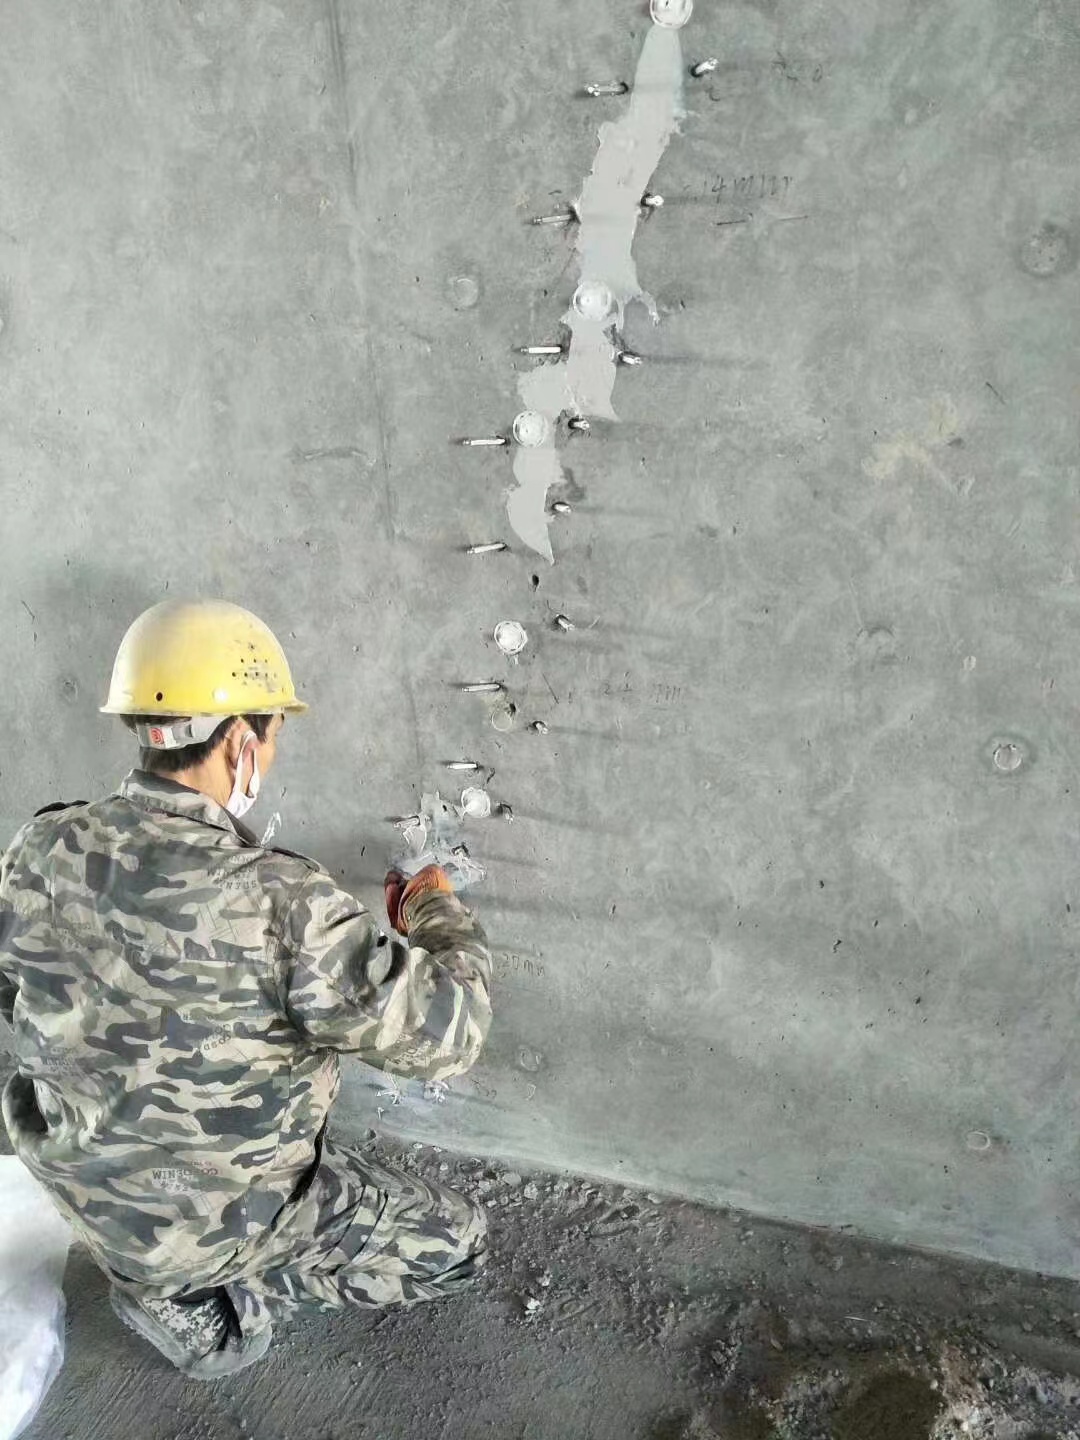 申扎混凝土楼板裂缝加固施工的方案